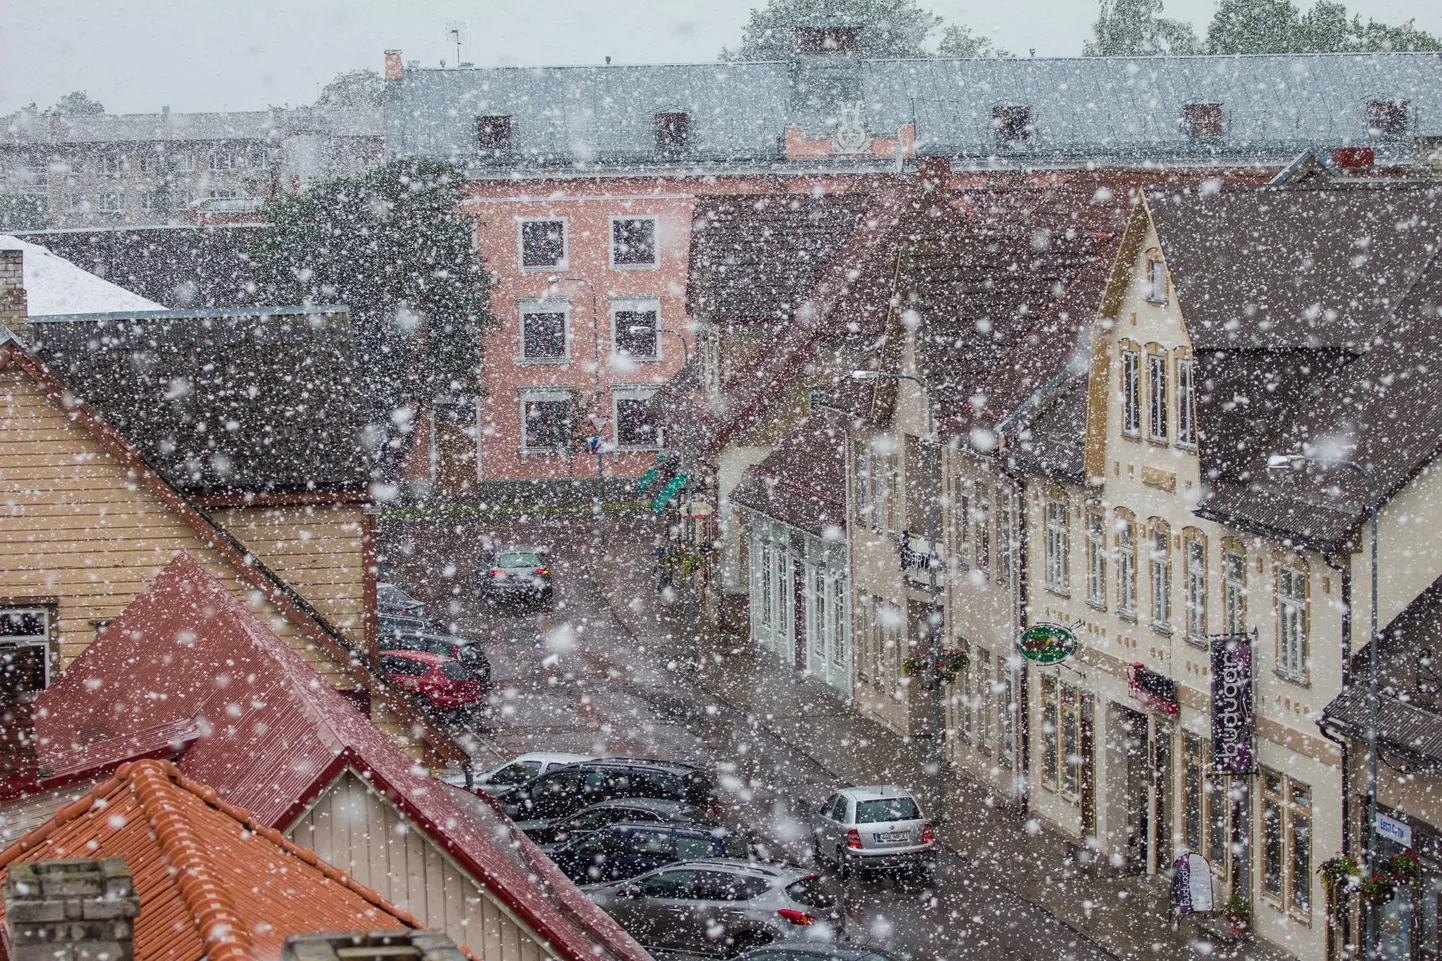 See pilt on tehtud Viljandis 2014. aasta 17. juunil, päeval, mis on läinud ilmalukku hooaja kõige hilisema lumesajuga.